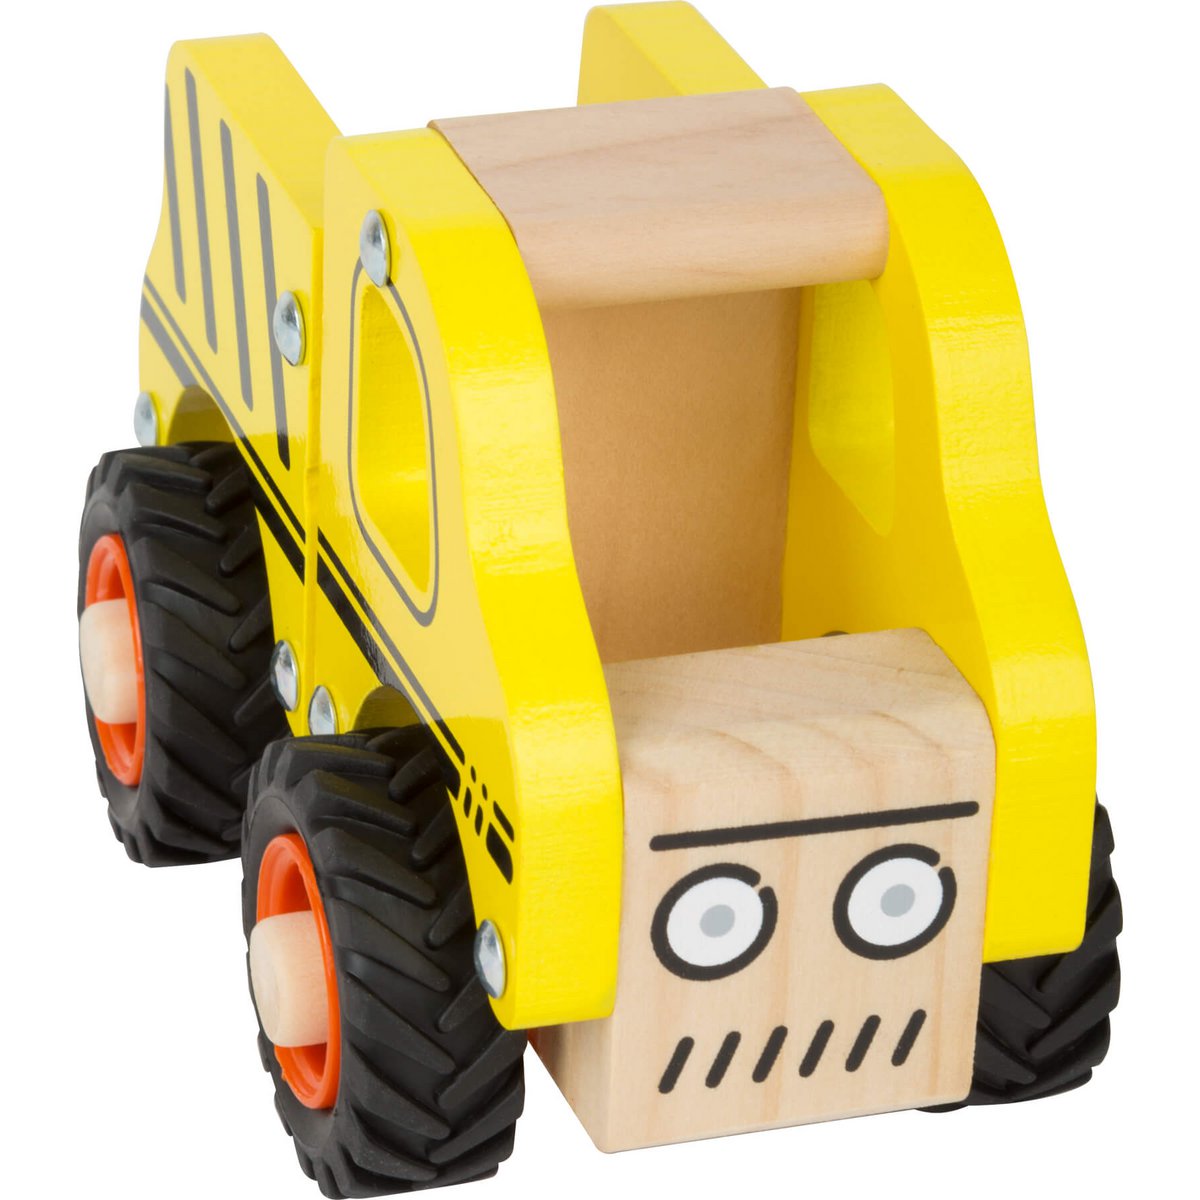 Gelbes Baufahrzeug aus FSC-zertifizierten Holz mit gummierten Reifen